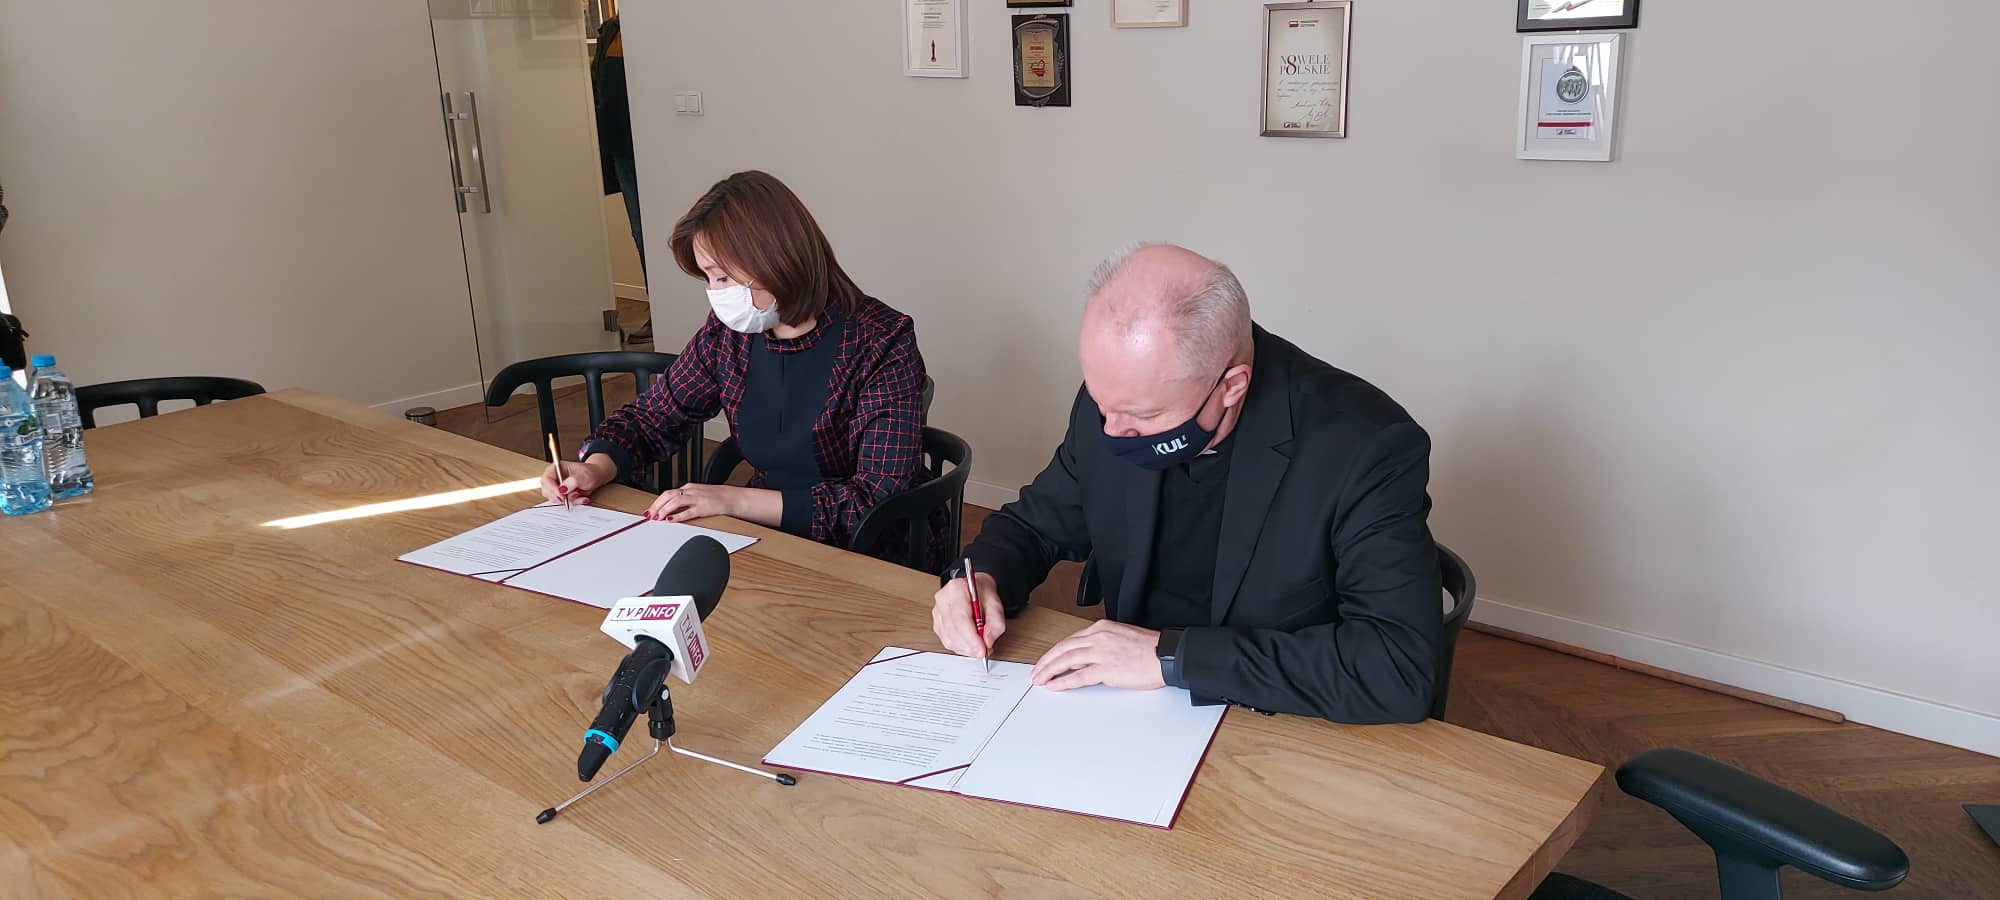 KUL podpisał porozumienie o współpracy z Fundacją Wolność i Demokracja - Zdjęcie główne